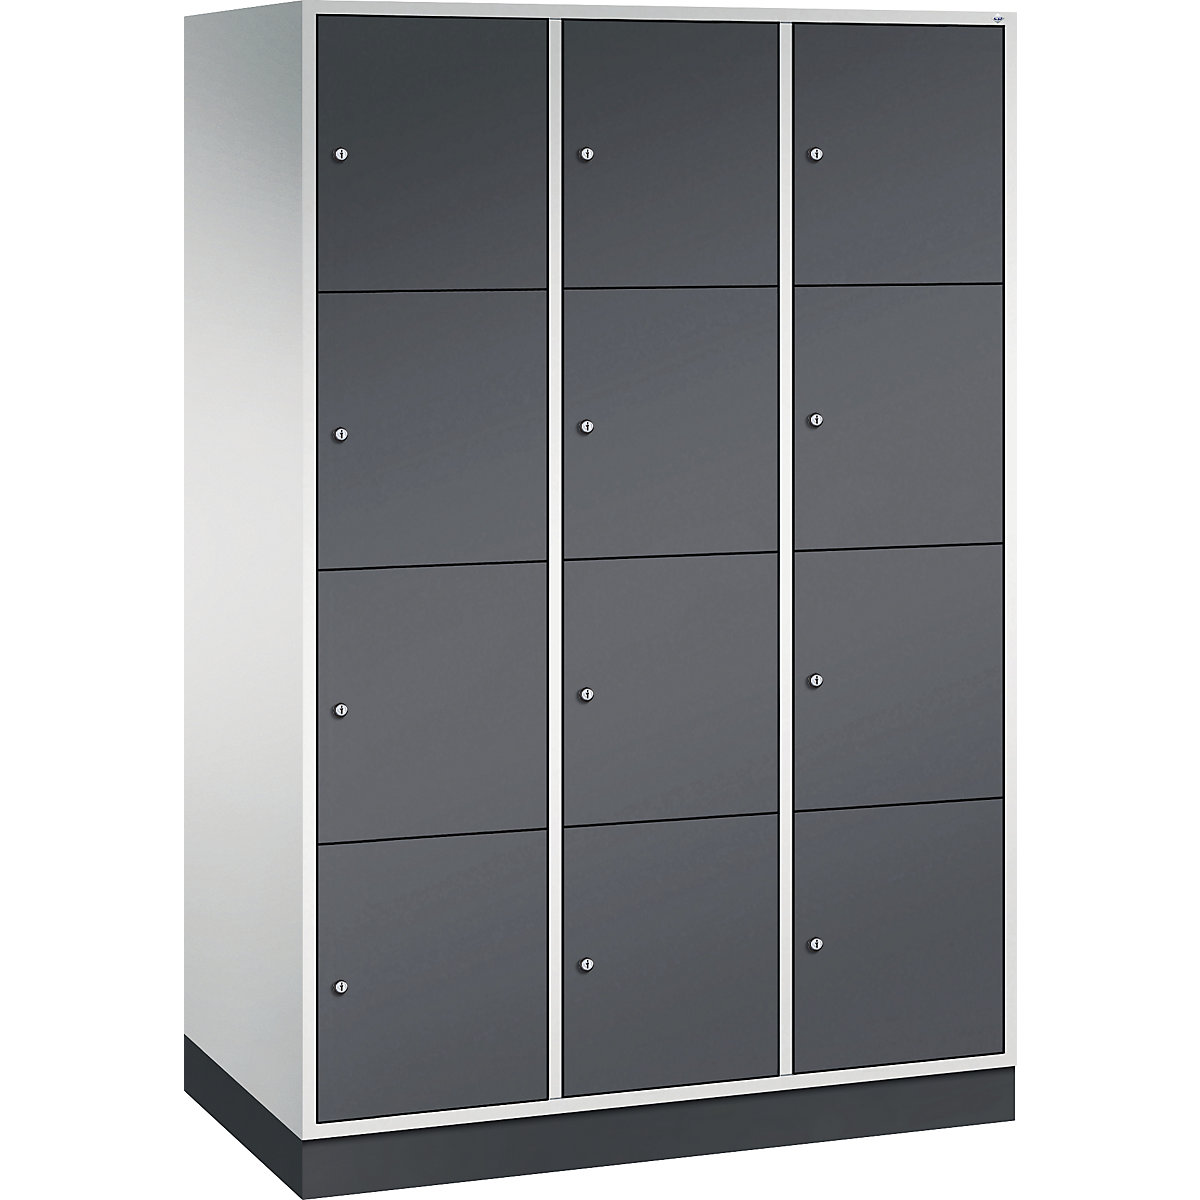 Vestiaire multicases en acier INTRO, casiers hauteur 435 mm – C+P, l x p 1220 x 600 mm, 12 casiers, corps gris clair, portes gris noir-13